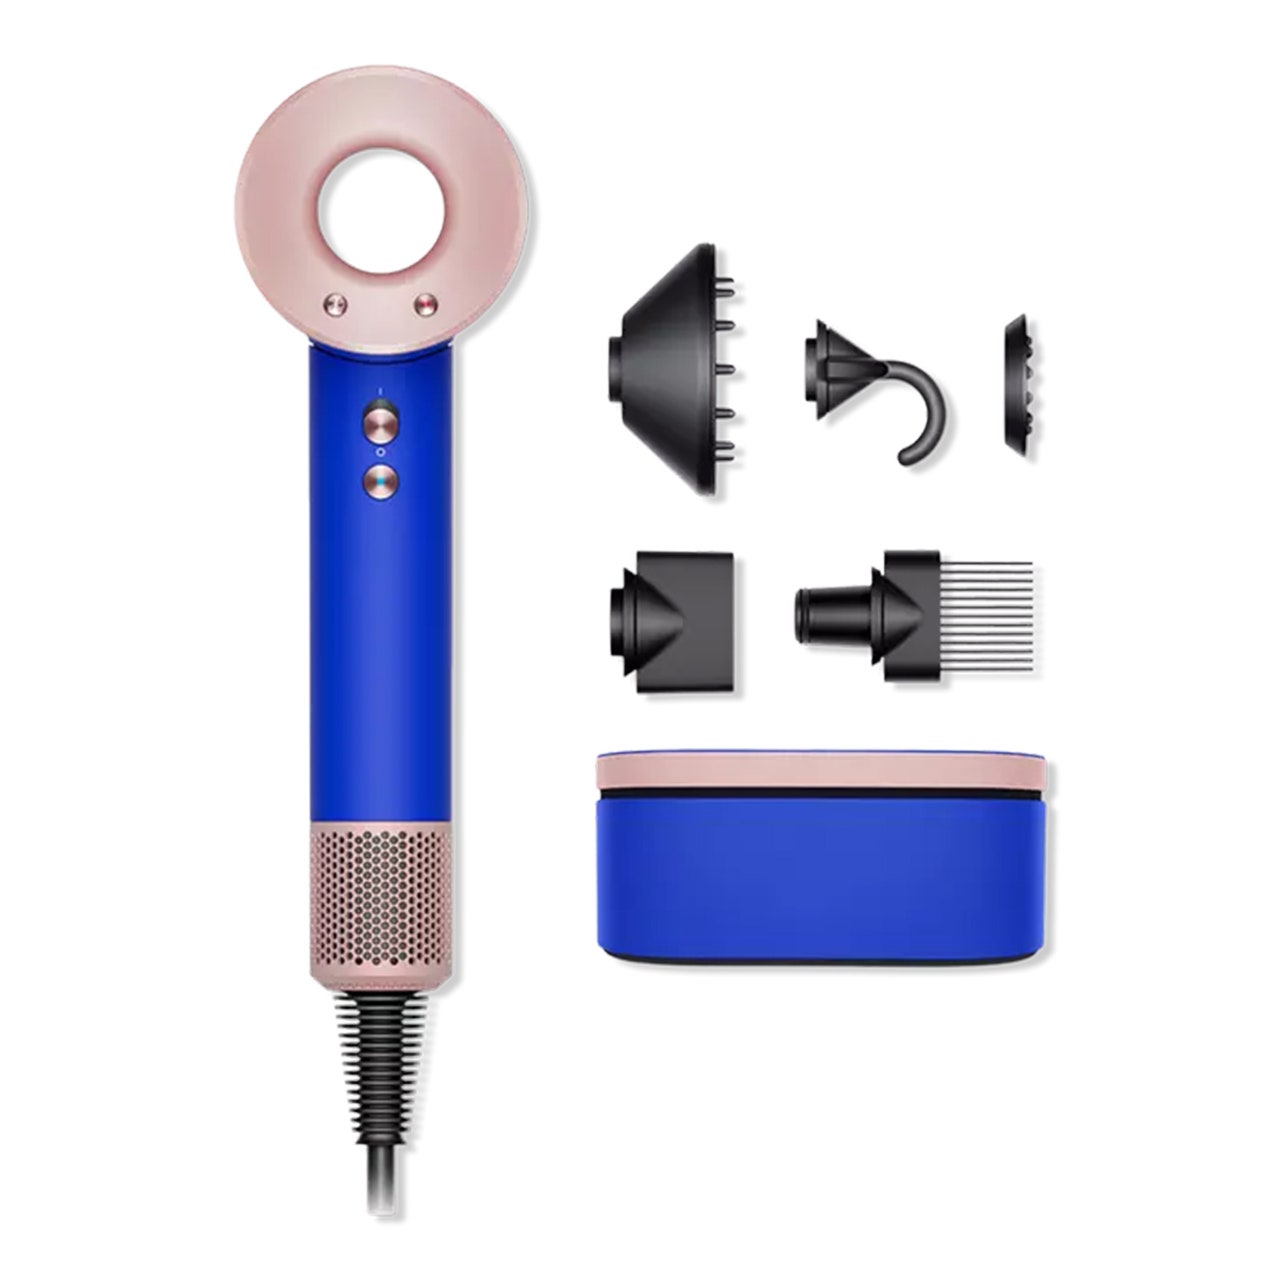 Special Edition Supersonic Haartrockner in Blue Blush, blauer und rosafarbener Dyson-Haartrockner auf weißem Hintergrund